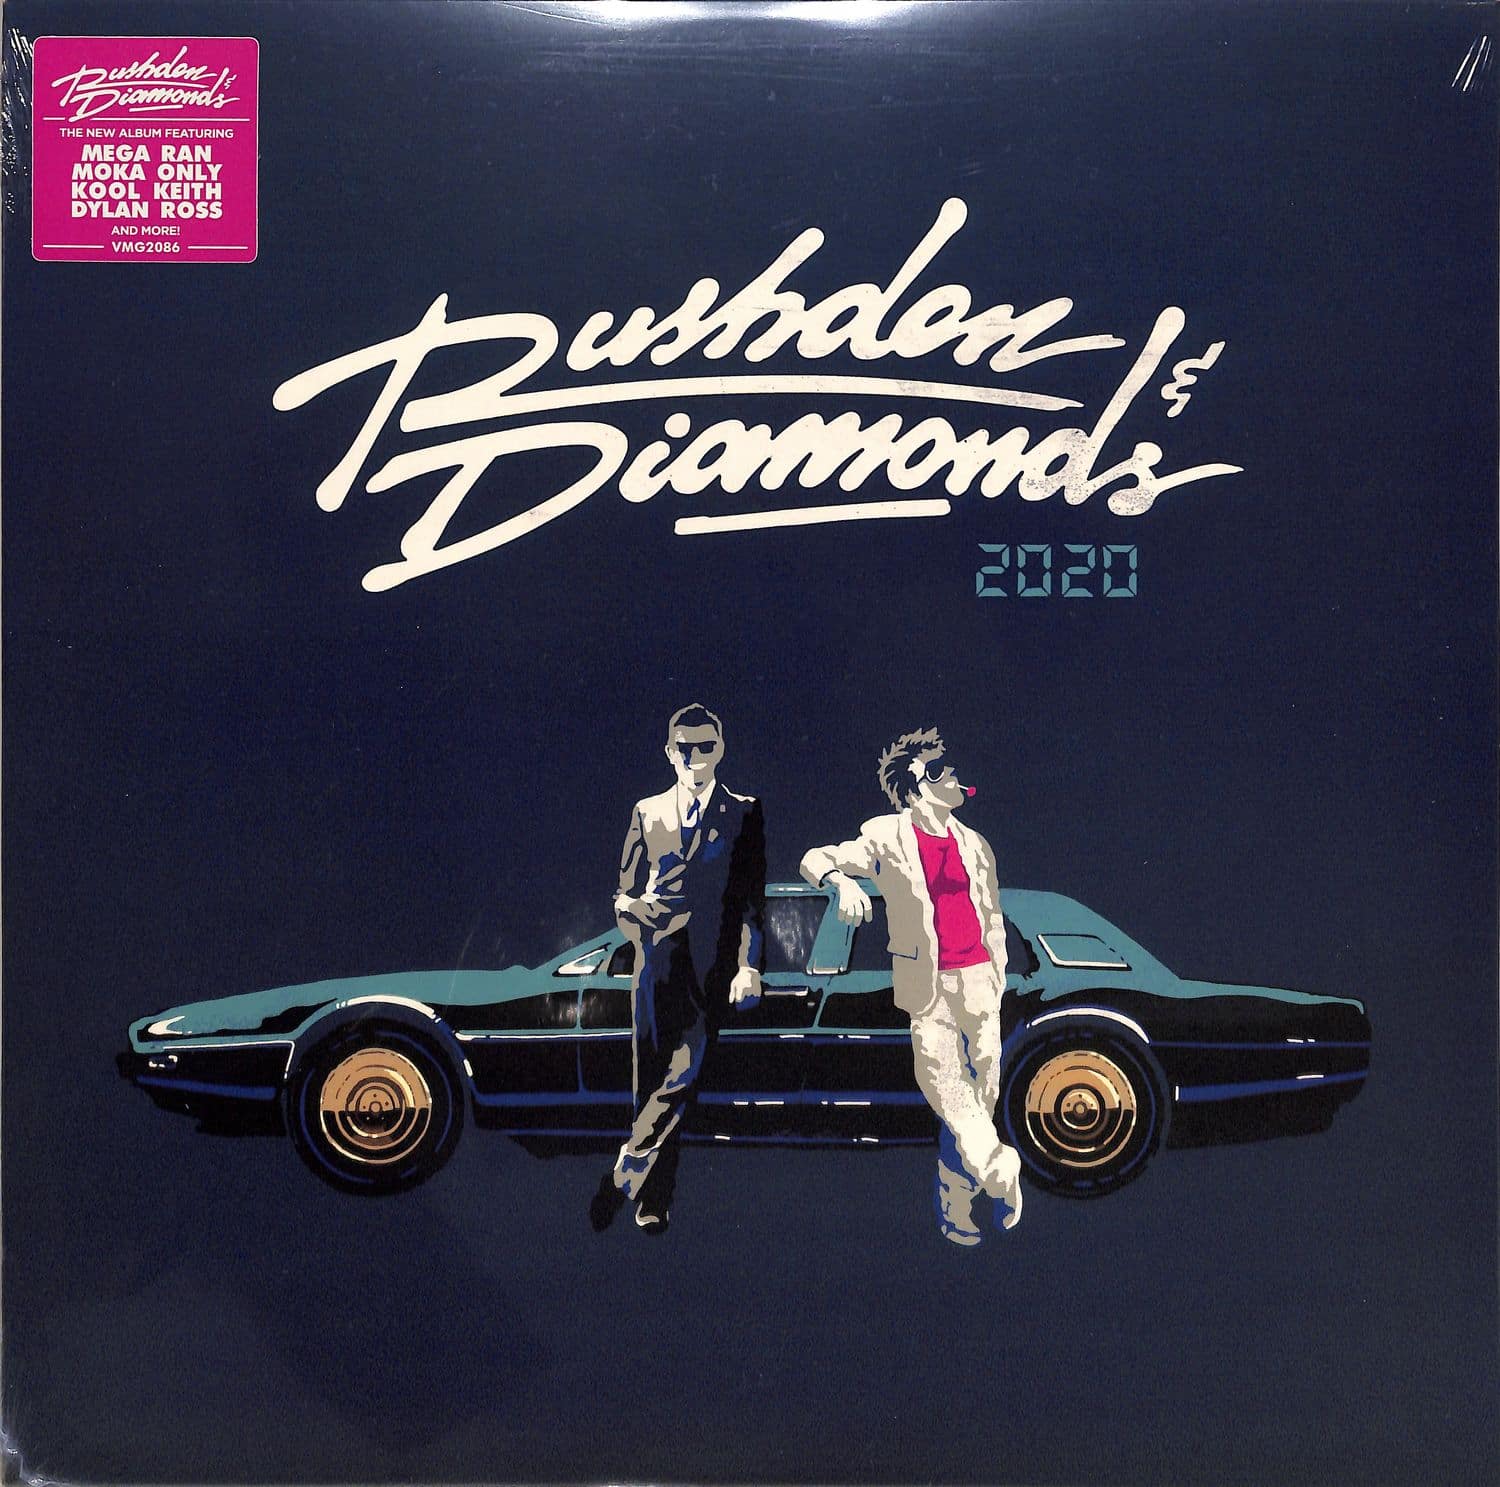 Rushden & Diamonds - 2020 